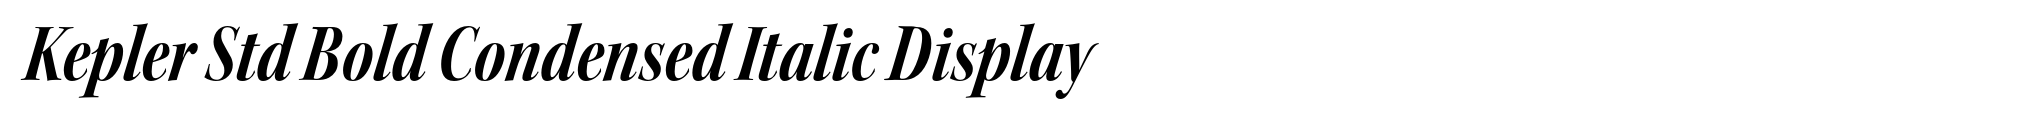 Kepler Std Bold Condensed Italic Display image